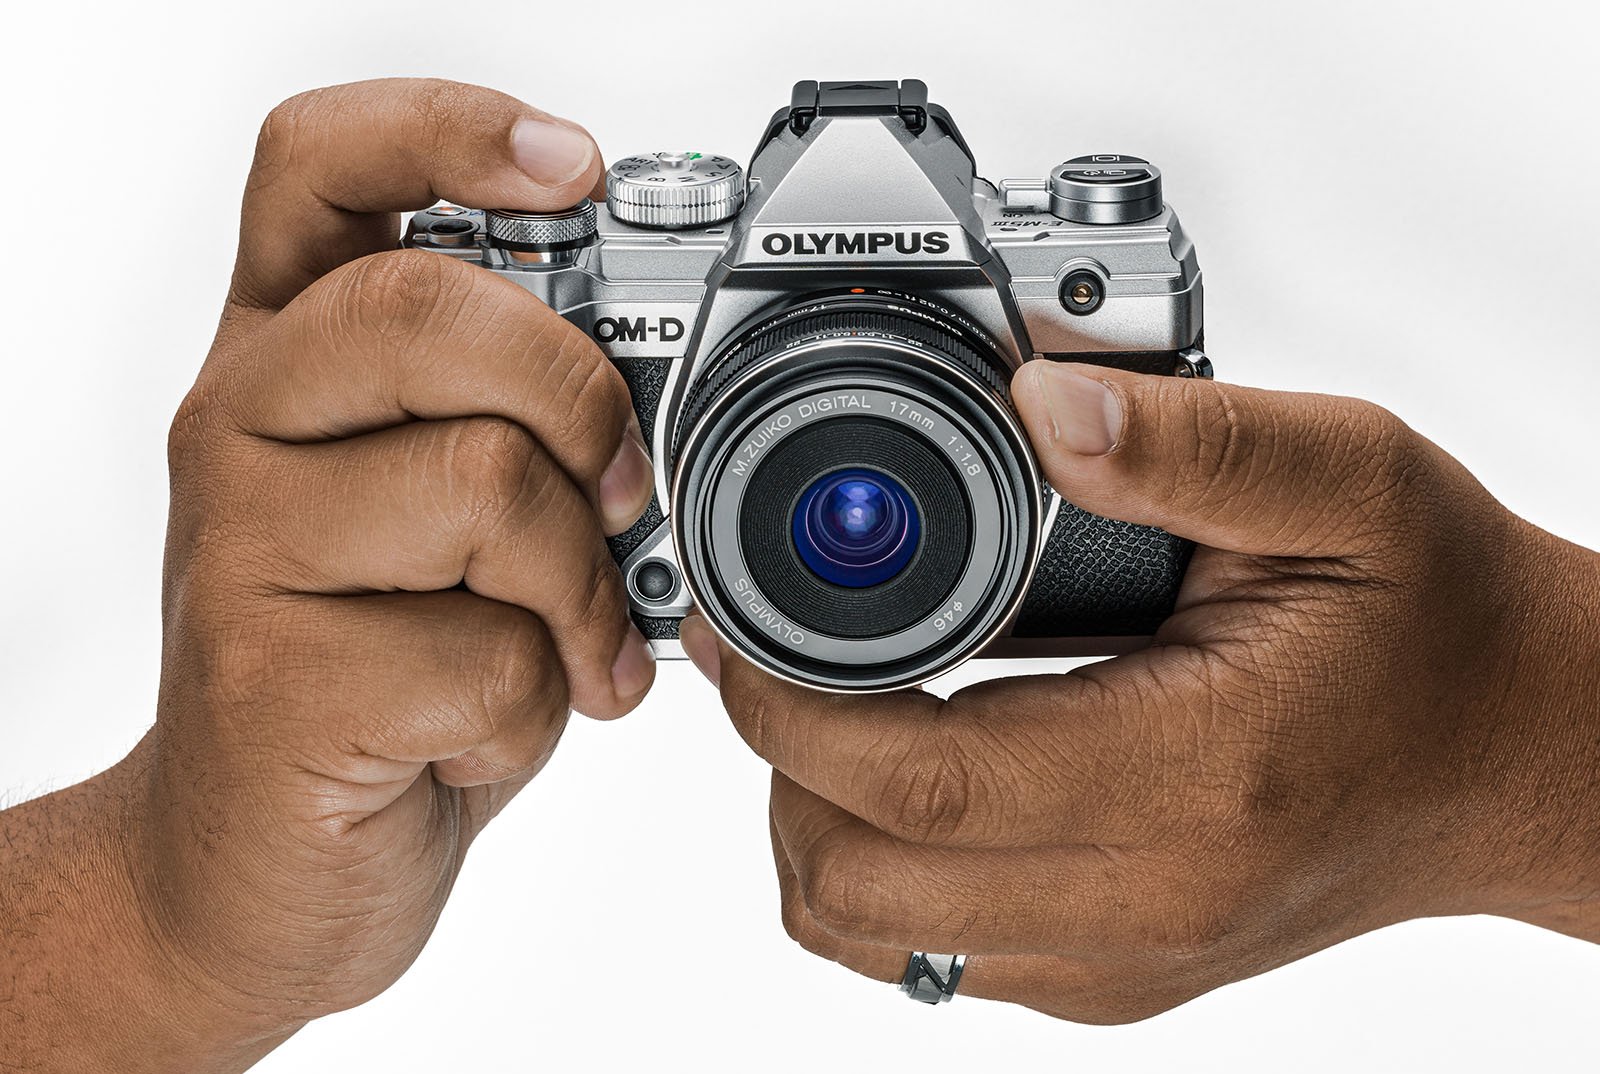  rumor claims olympus will shut down its camera 